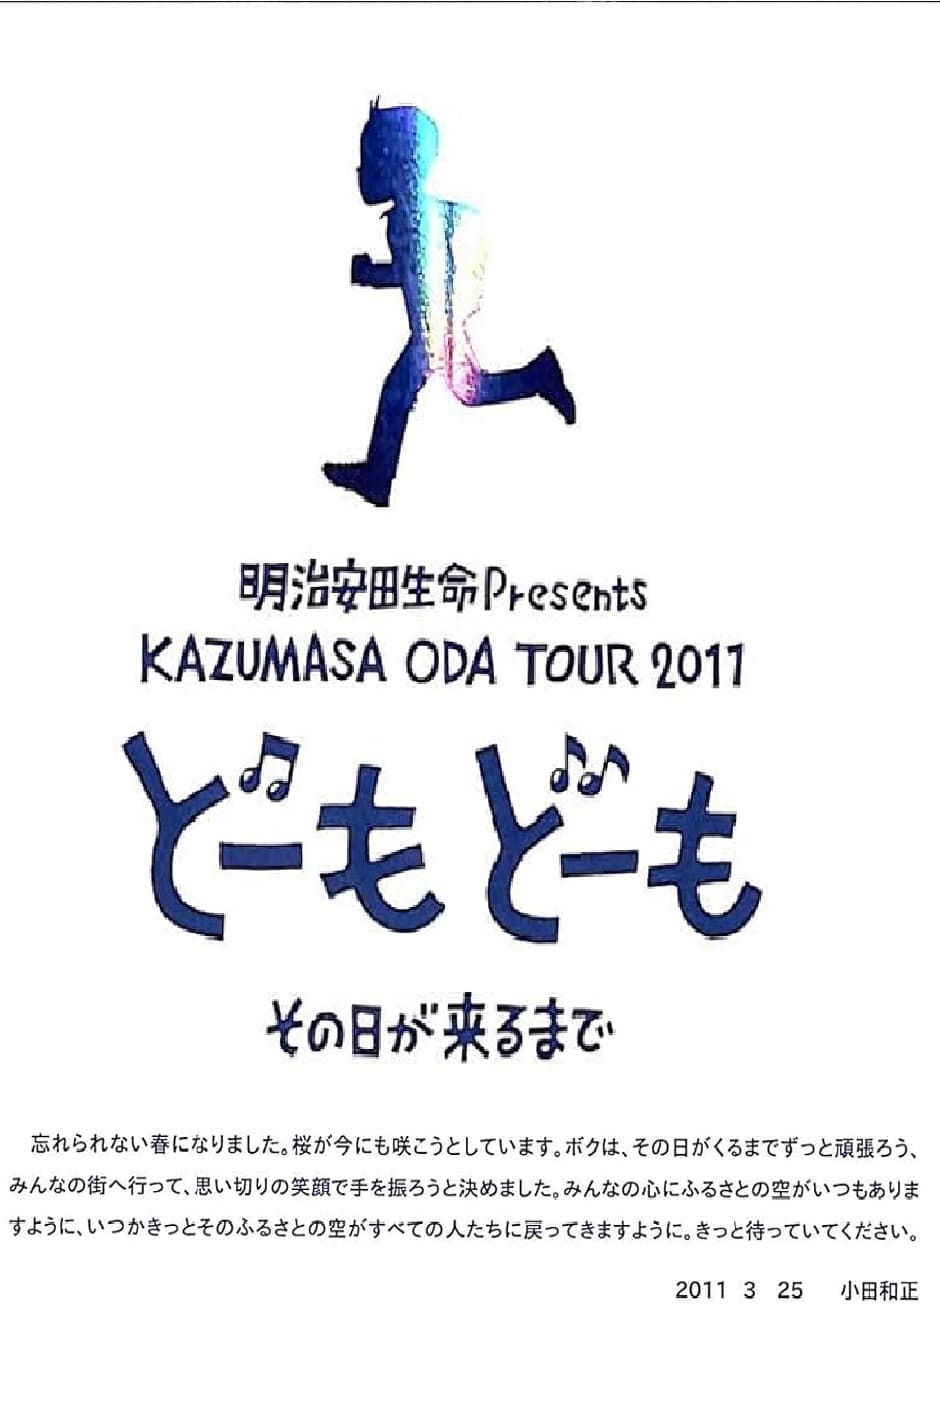 Kazumasa Oda Concert Tour 2011 in Tokyo Dome